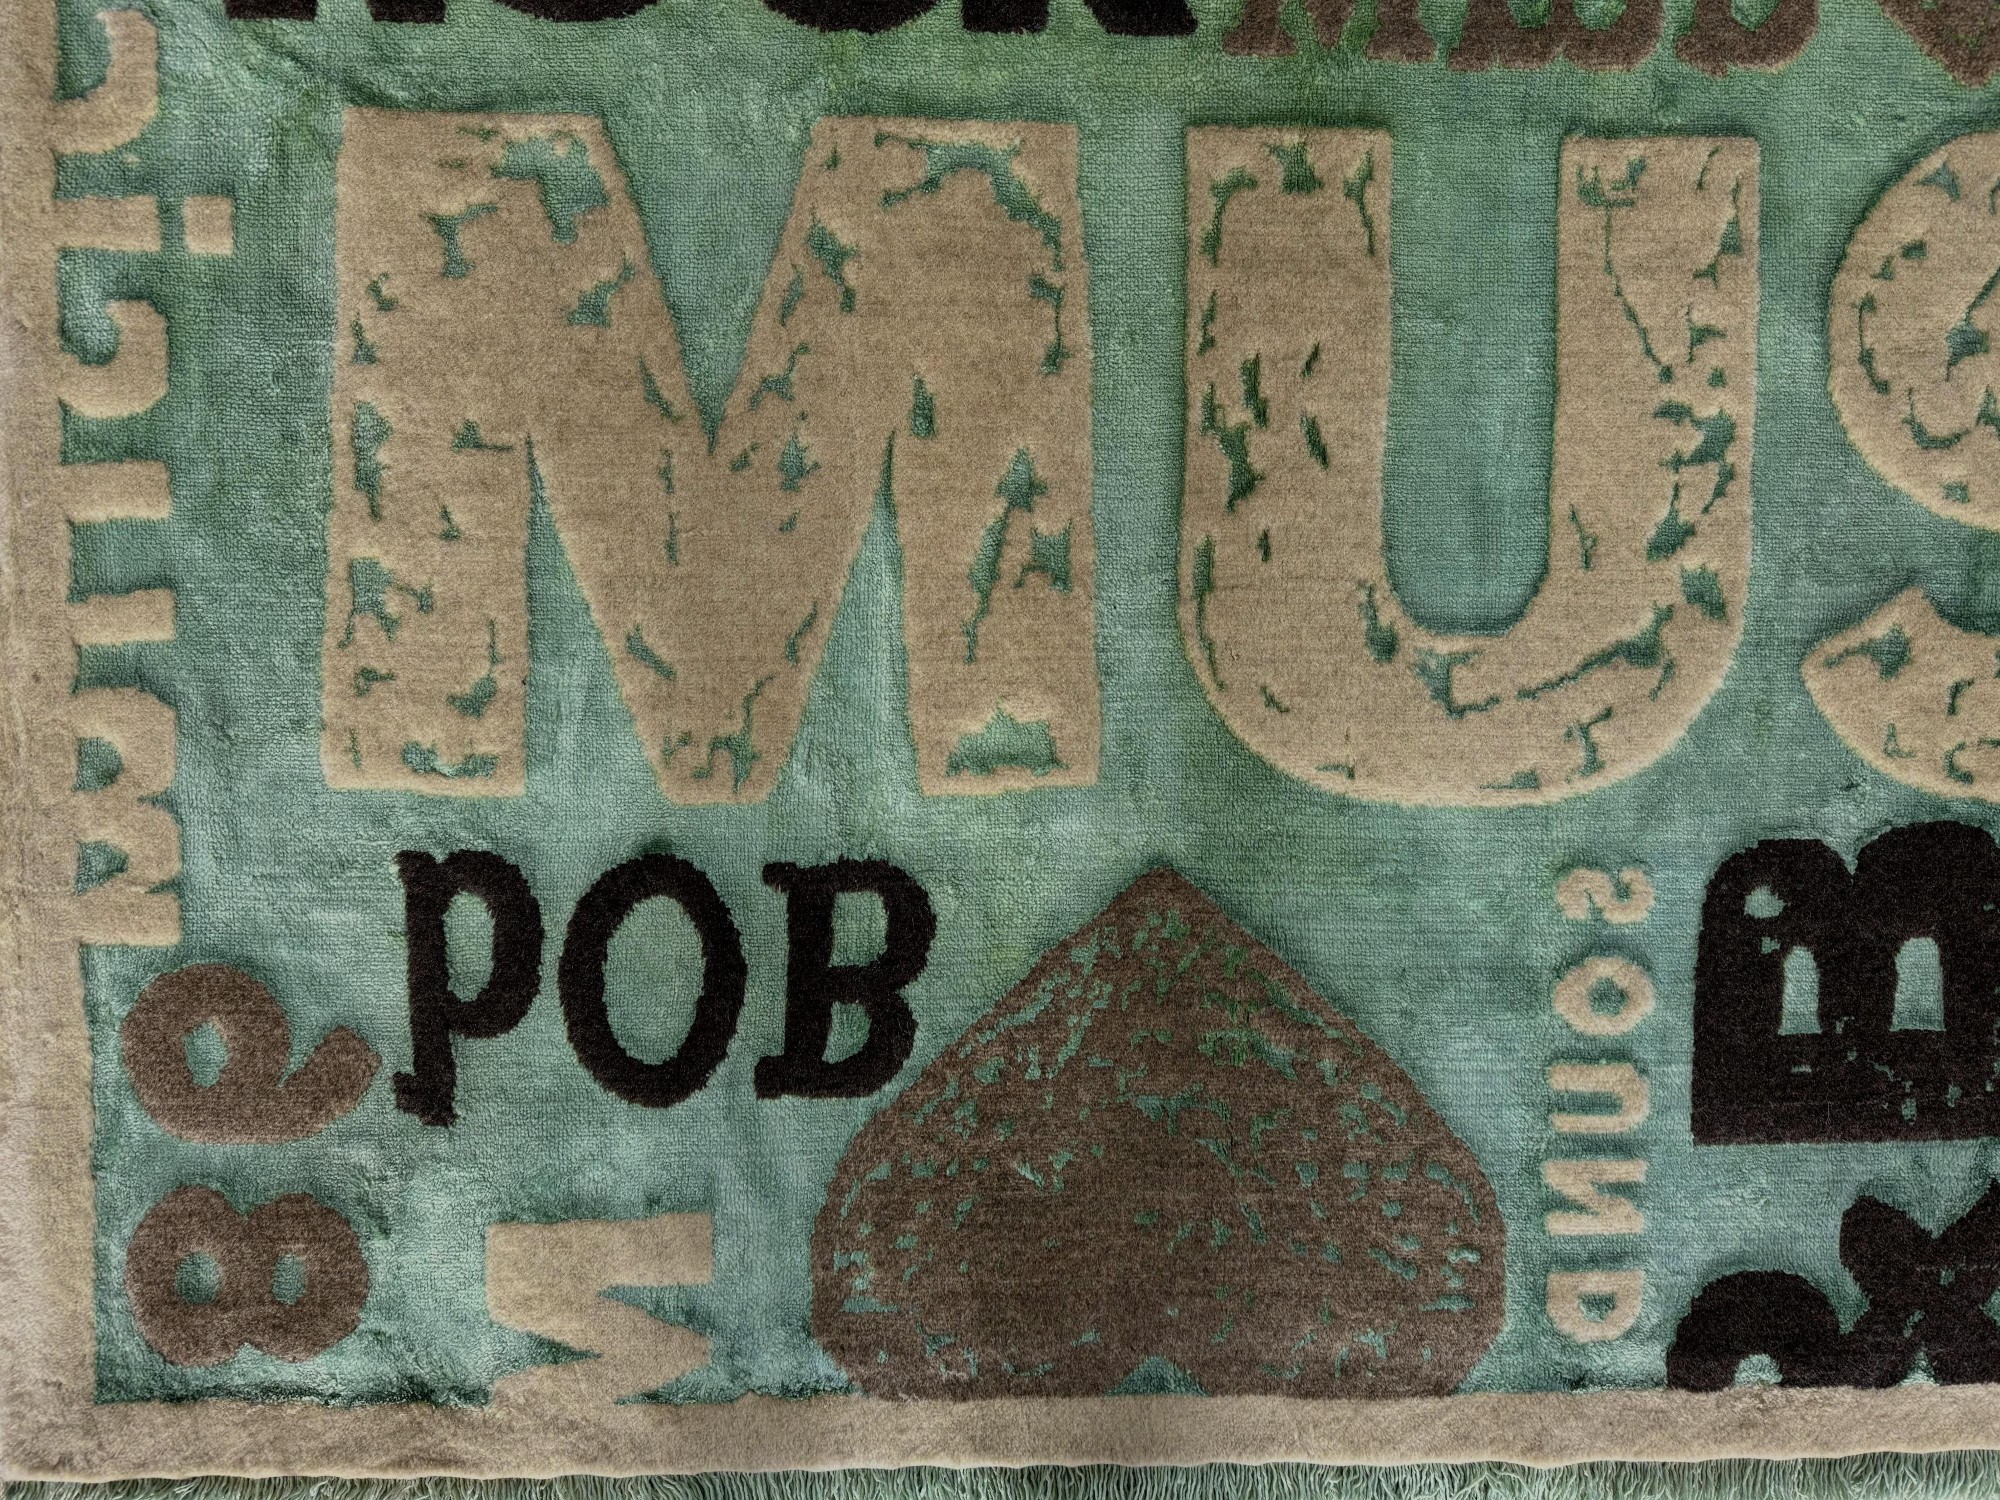 فرش پشمی ماشینی طبیعی و ارگانیک کد 0087 - زمینه سبز کم رنگ - حاشیه کرم